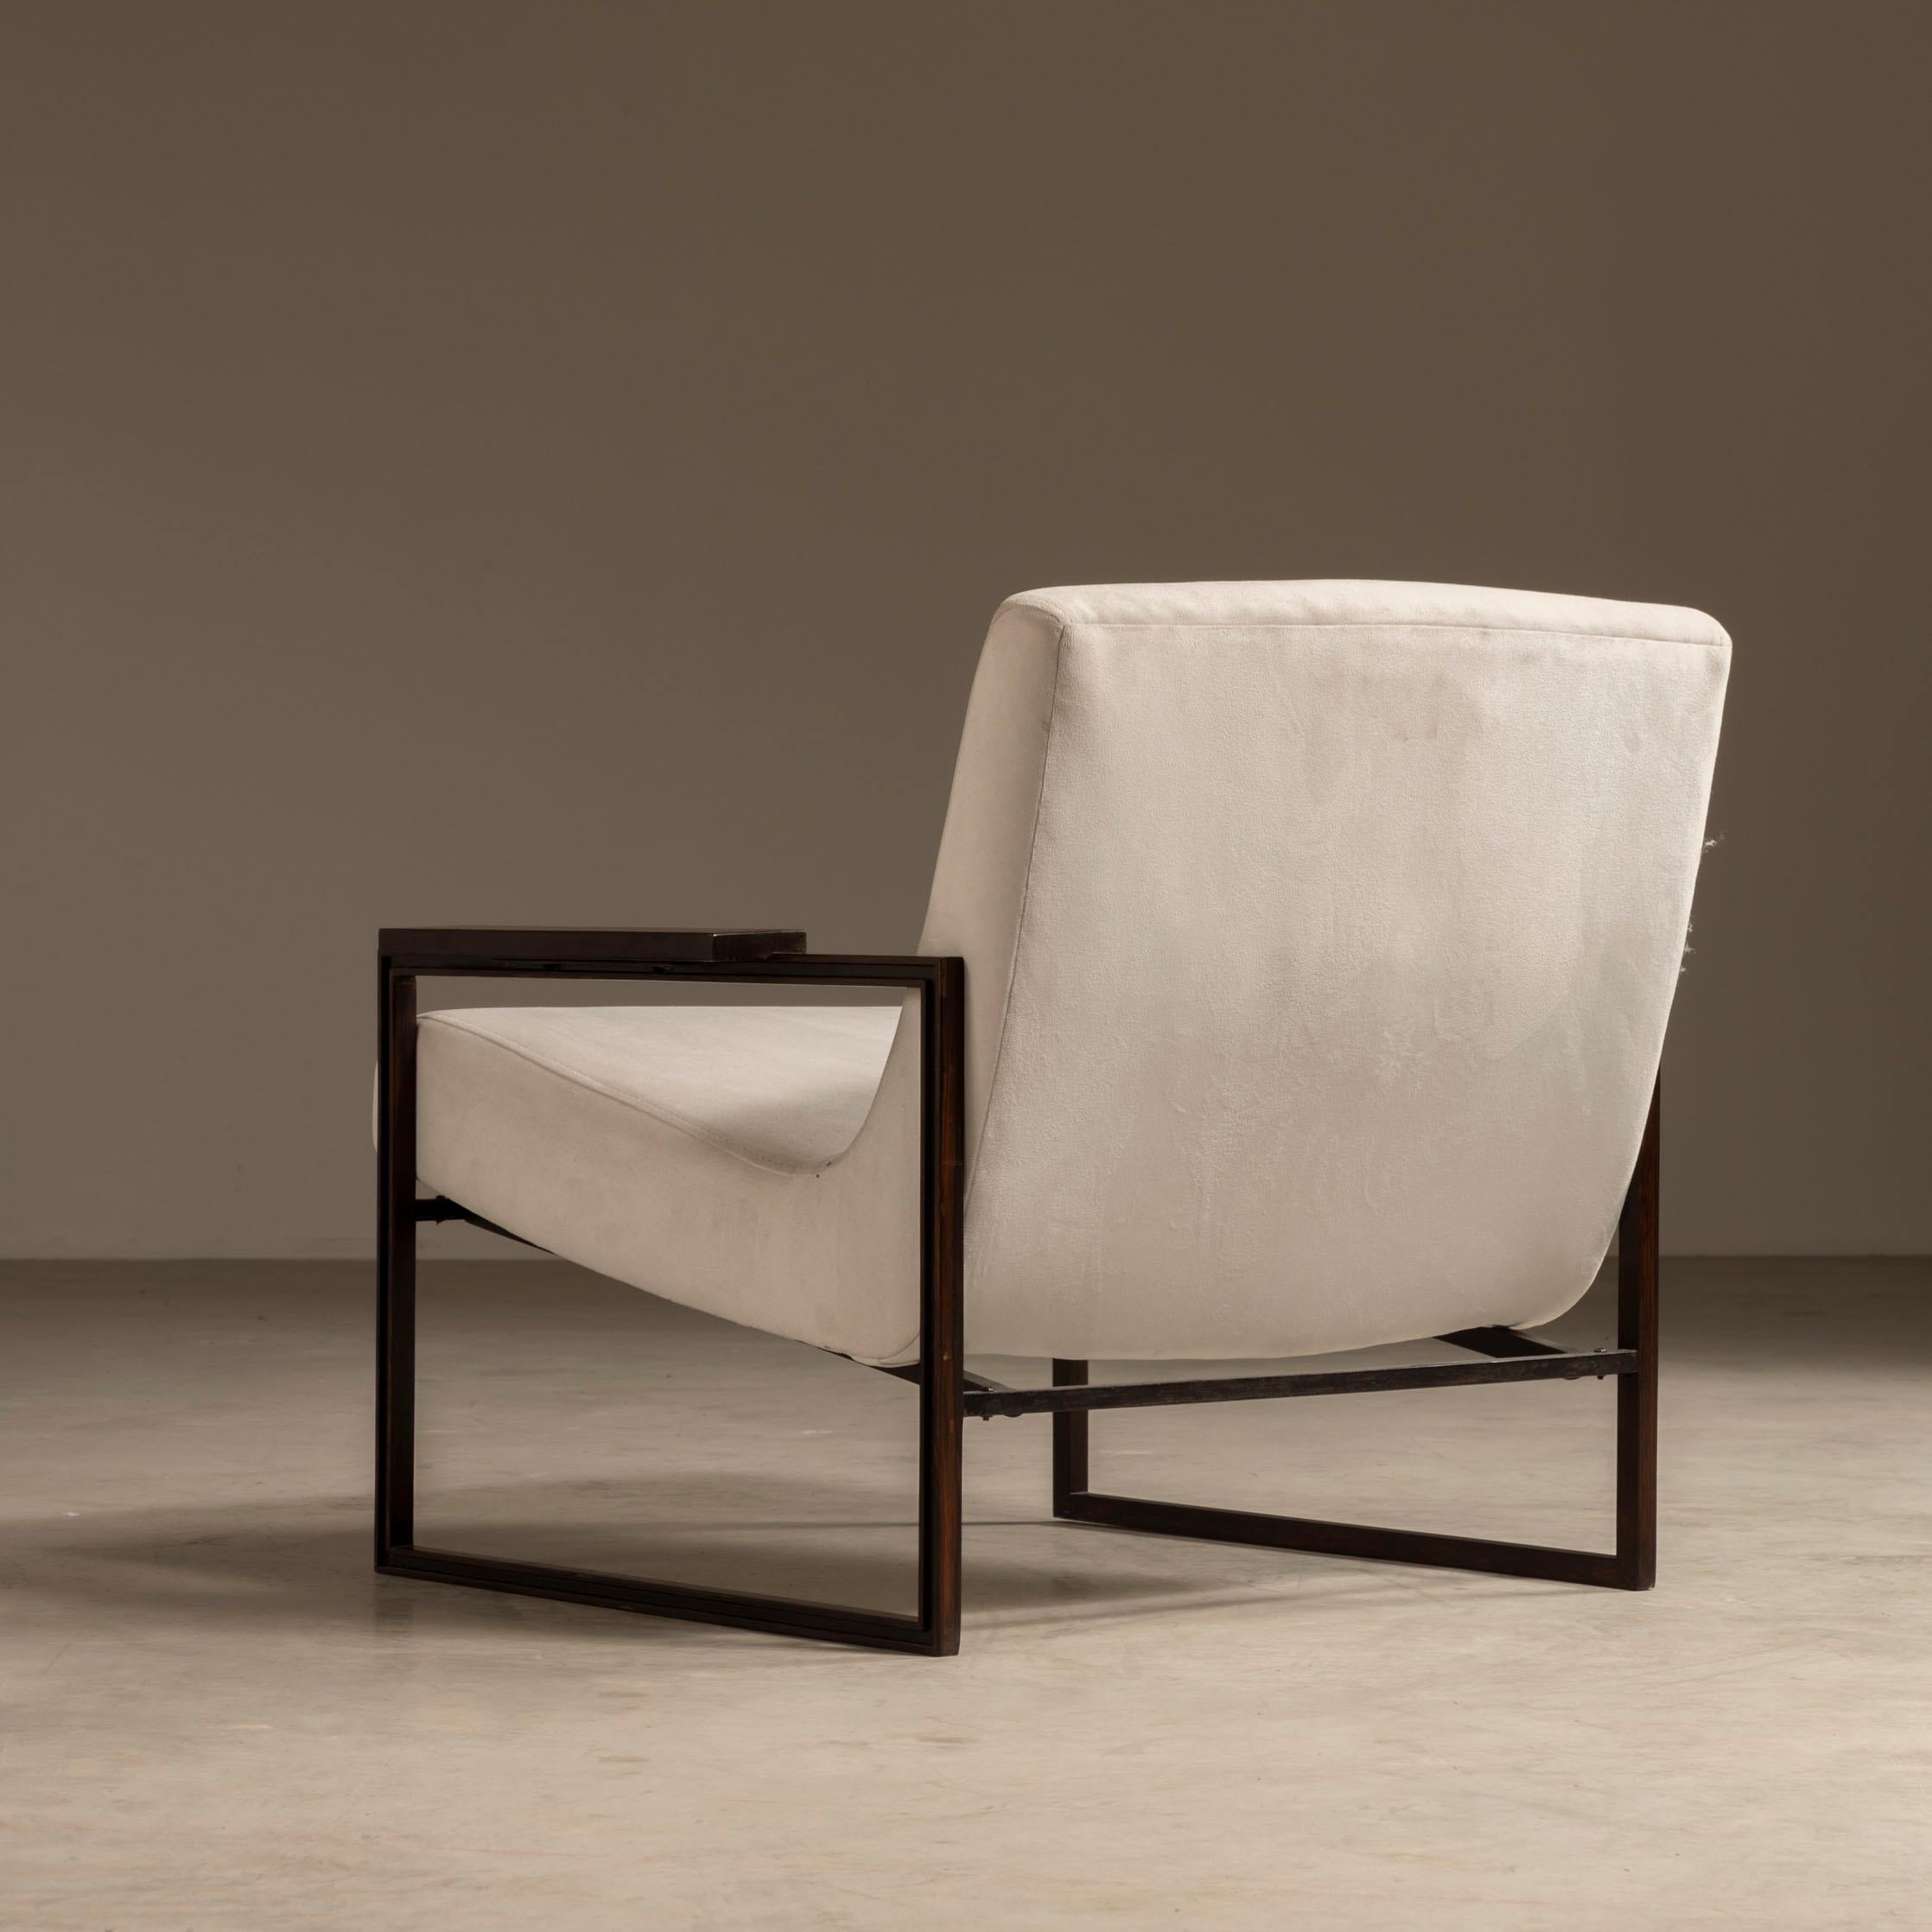 Brésilien Paire de fauteuilsMP-05 de Percival Lafer, style brésilien moderne du milieu du siècle dernier en vente